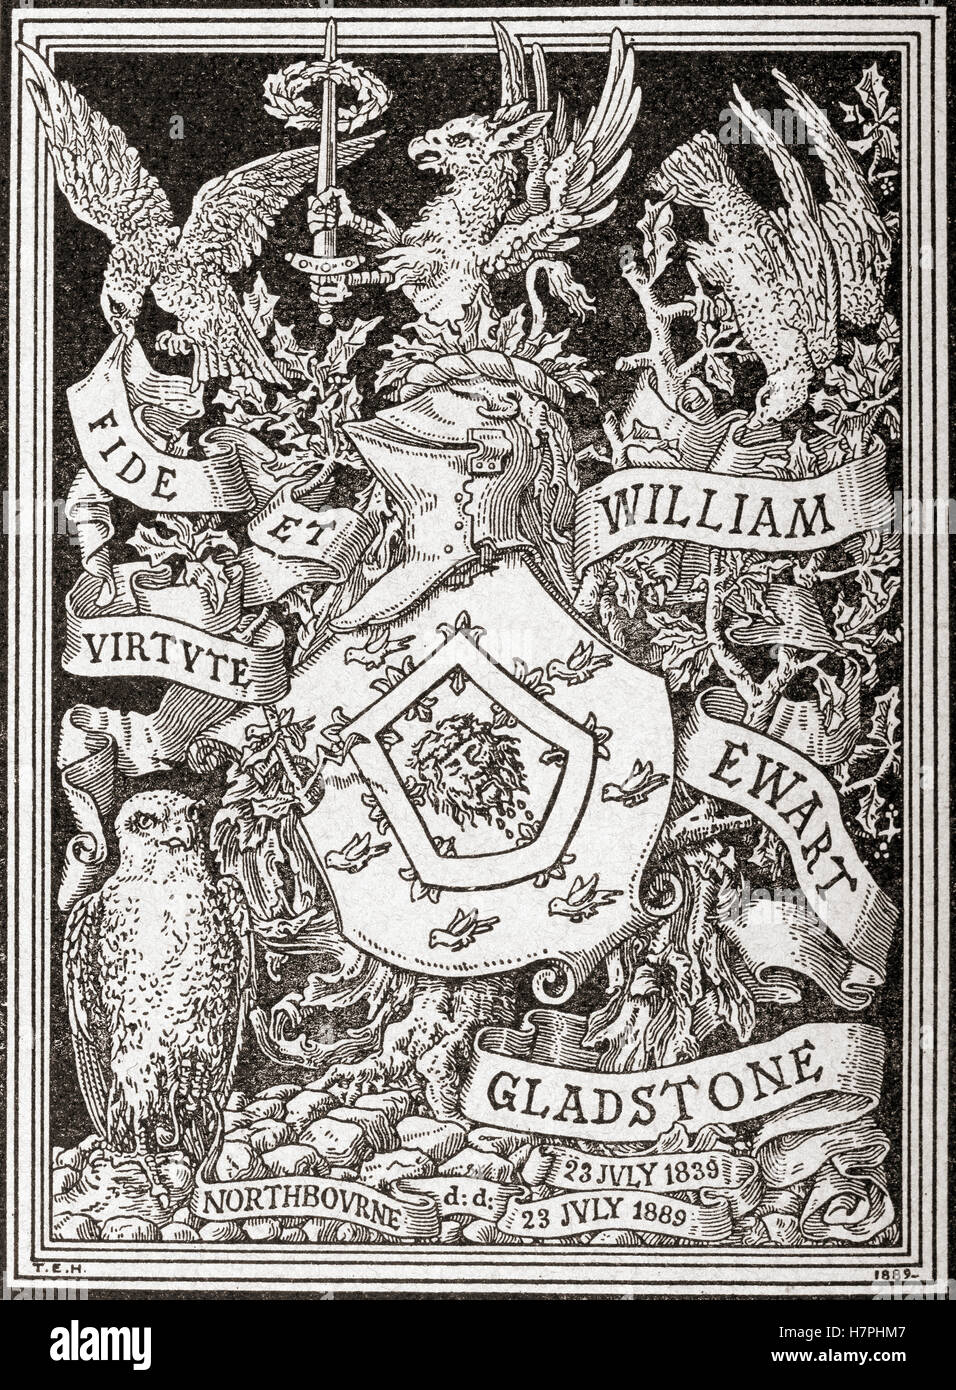 Un ex-libris aka Ex libris stamp à partir de la bibliothèque de William Gladstone. Un ex libris stamp indique la propriété. Banque D'Images